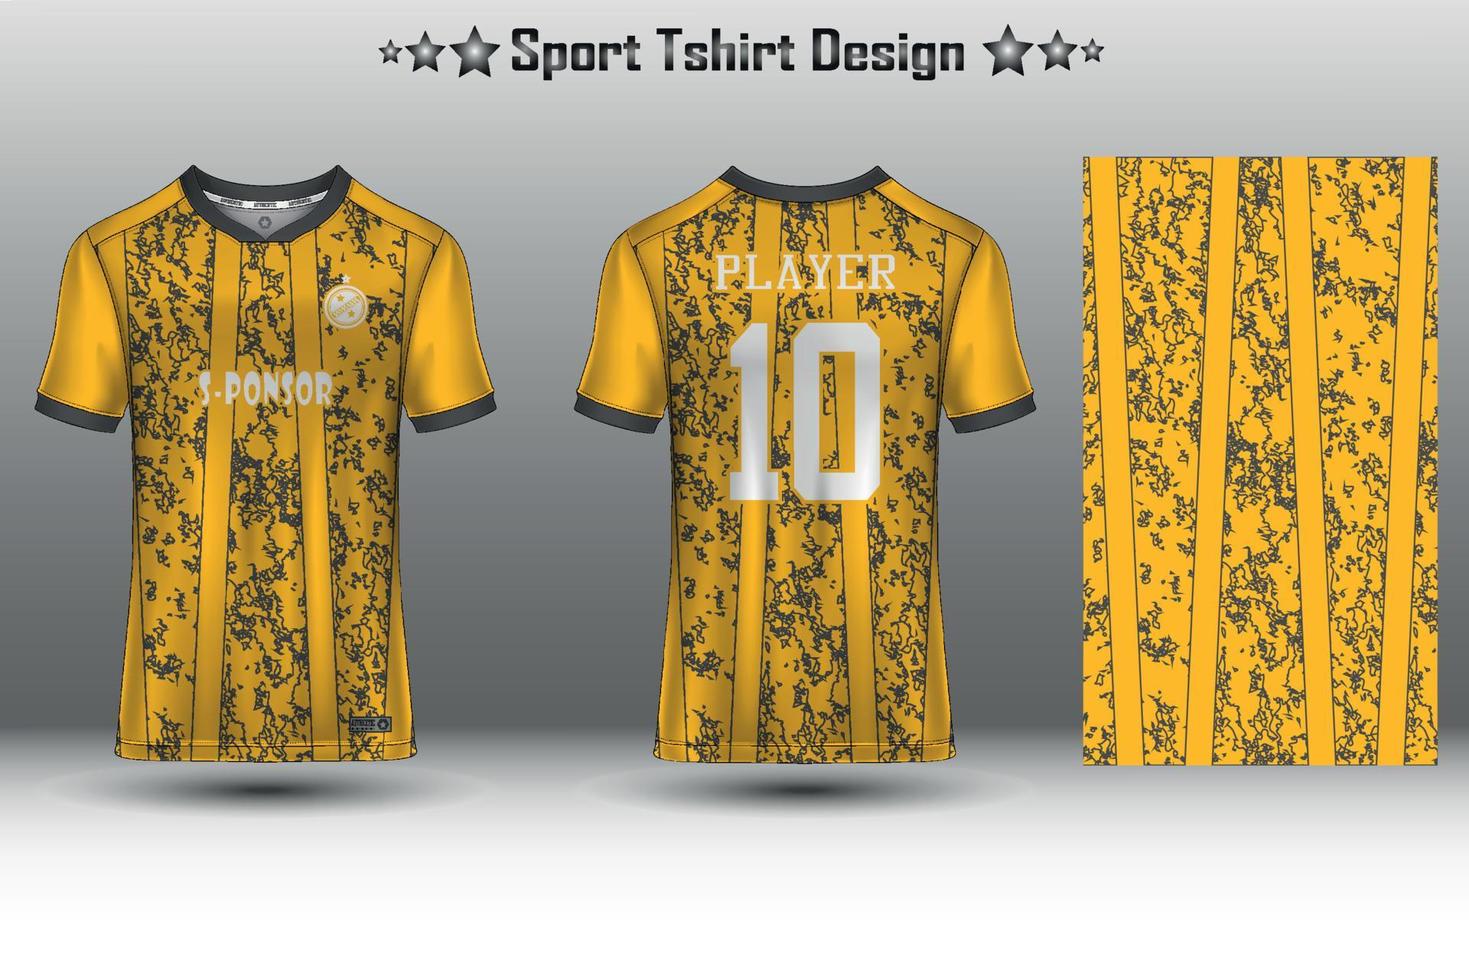 maquete de camisa de futebol, maquete de camisa de futebol, maquete de camisa de ciclismo e maquete de camisa esportiva com padrão geométrico abstrato vetor livre